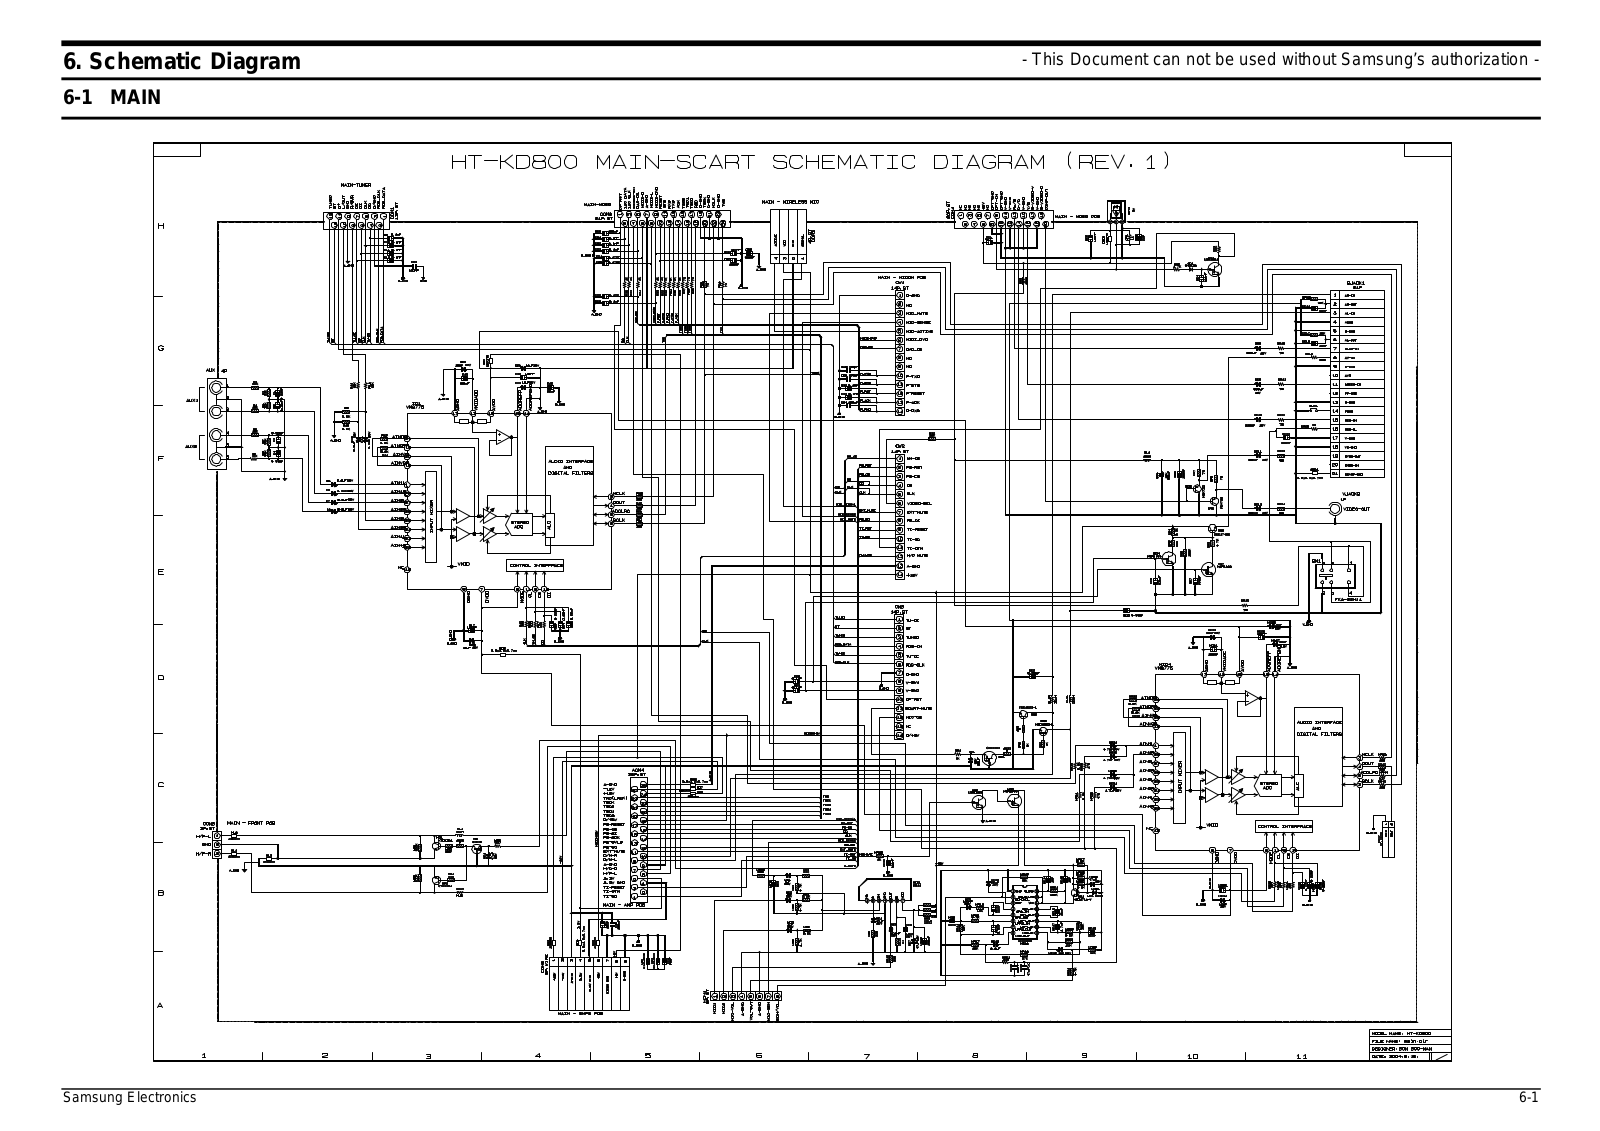 SAMSUNG HT-KD800, HT-KD800T Schematic Diagram